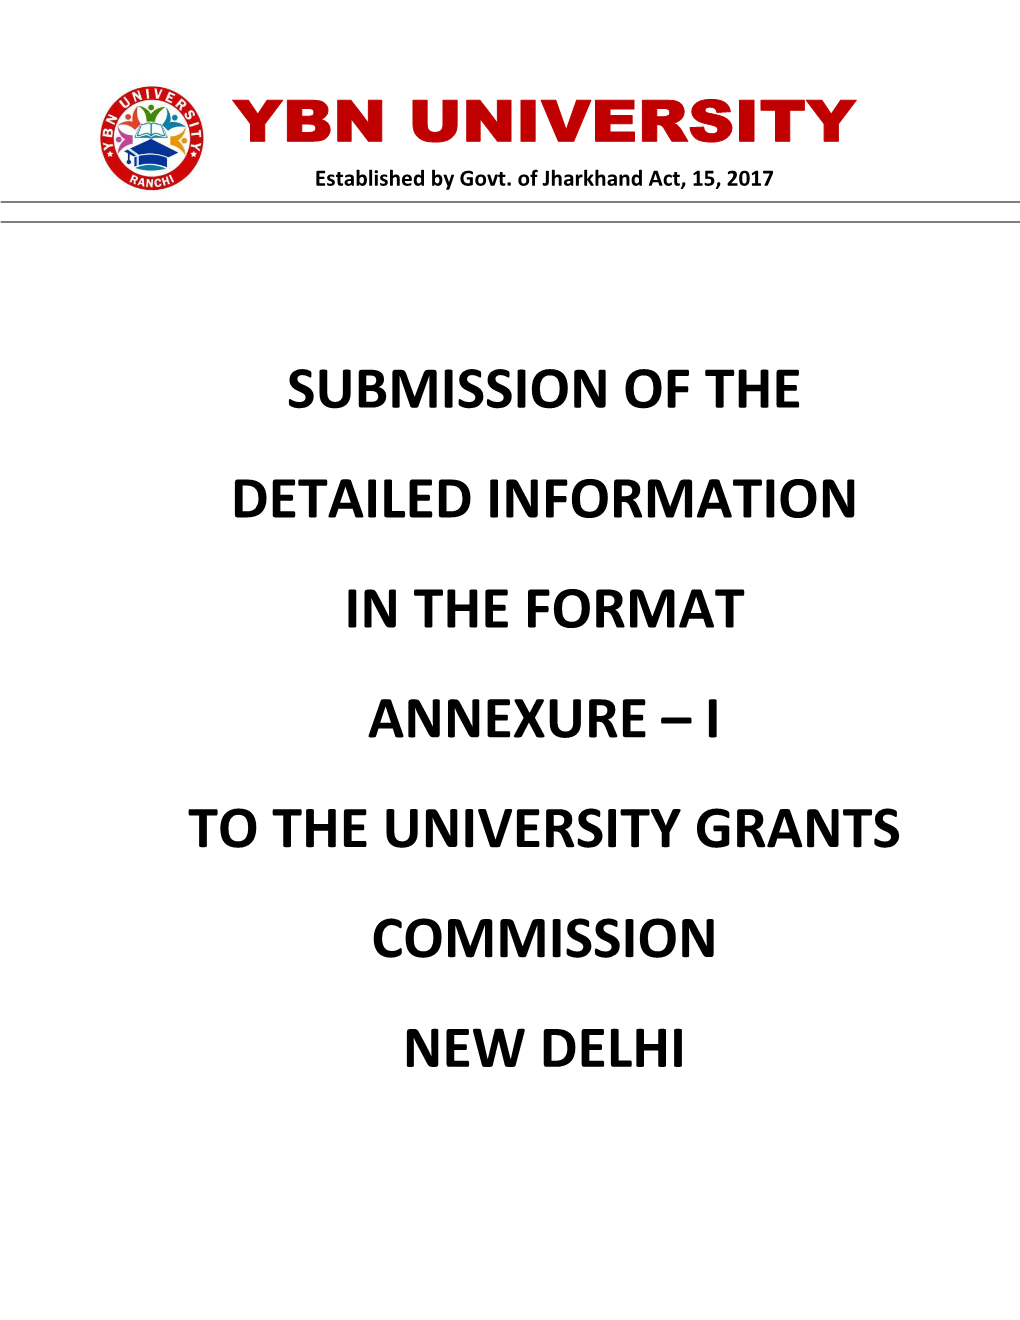 I to the University Grants Commission New Delhi